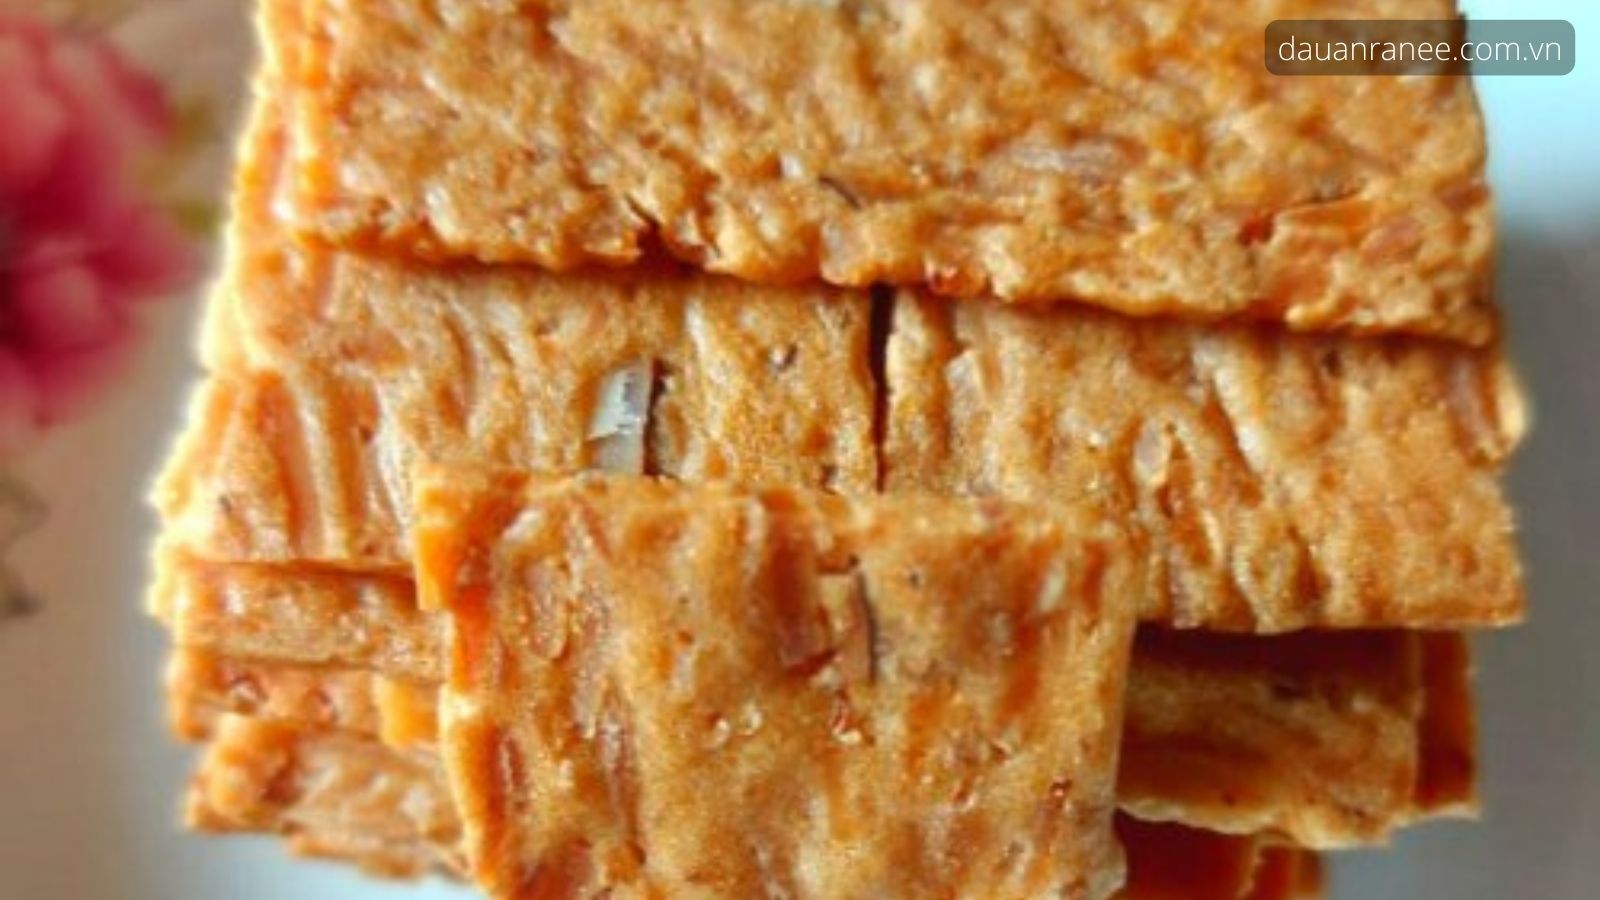 Nguồn cơ Bánh dừa nướng Đà Nẵng trở thành đặc sản nổi tiếng